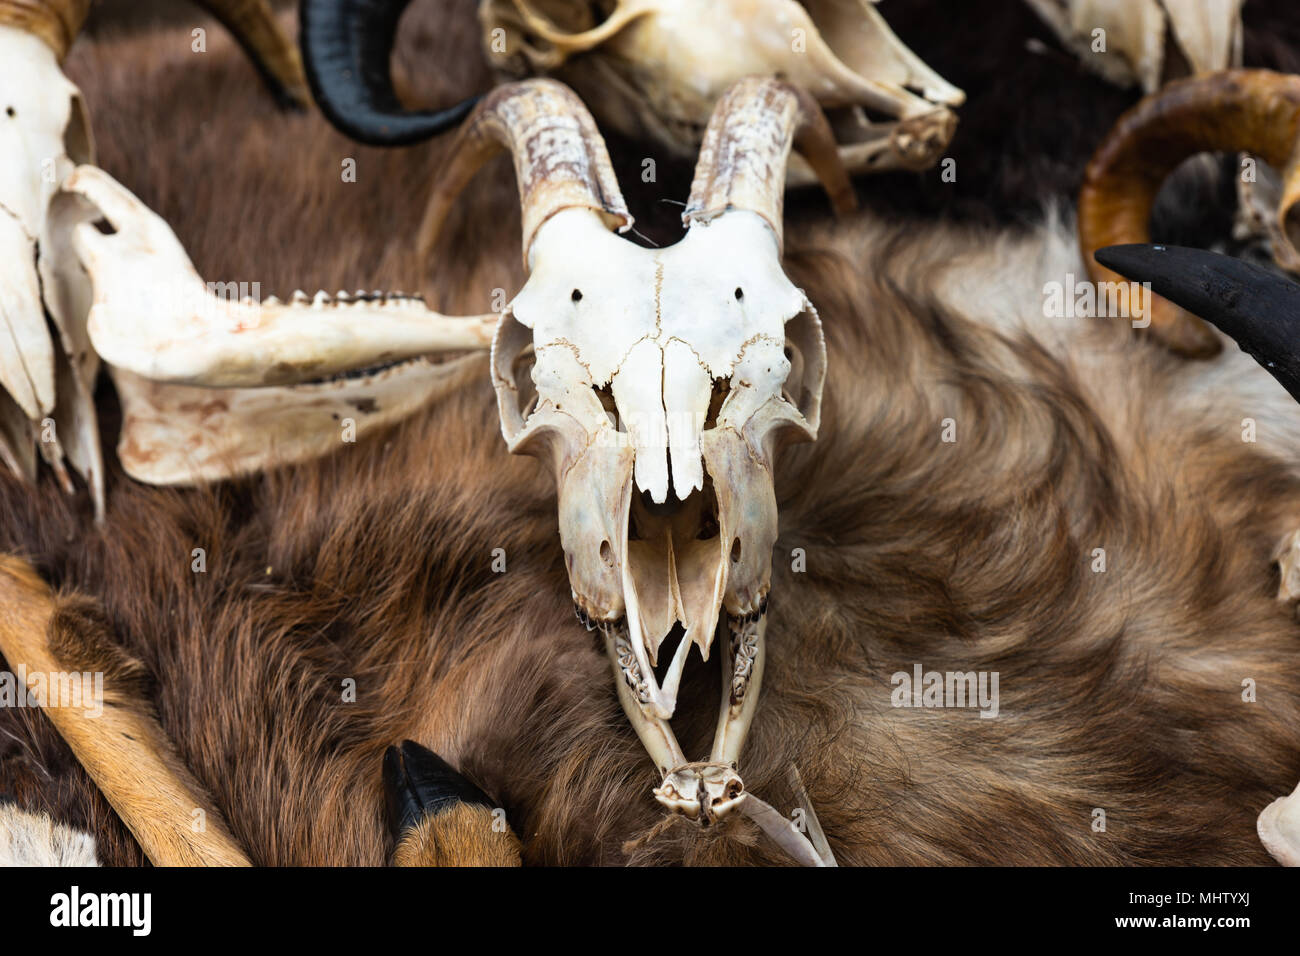 Crâne de chèvre avec de grandes cornes se pose sur une peau d'animal de couleur brune. Accessoires Médiévaux Banque D'Images